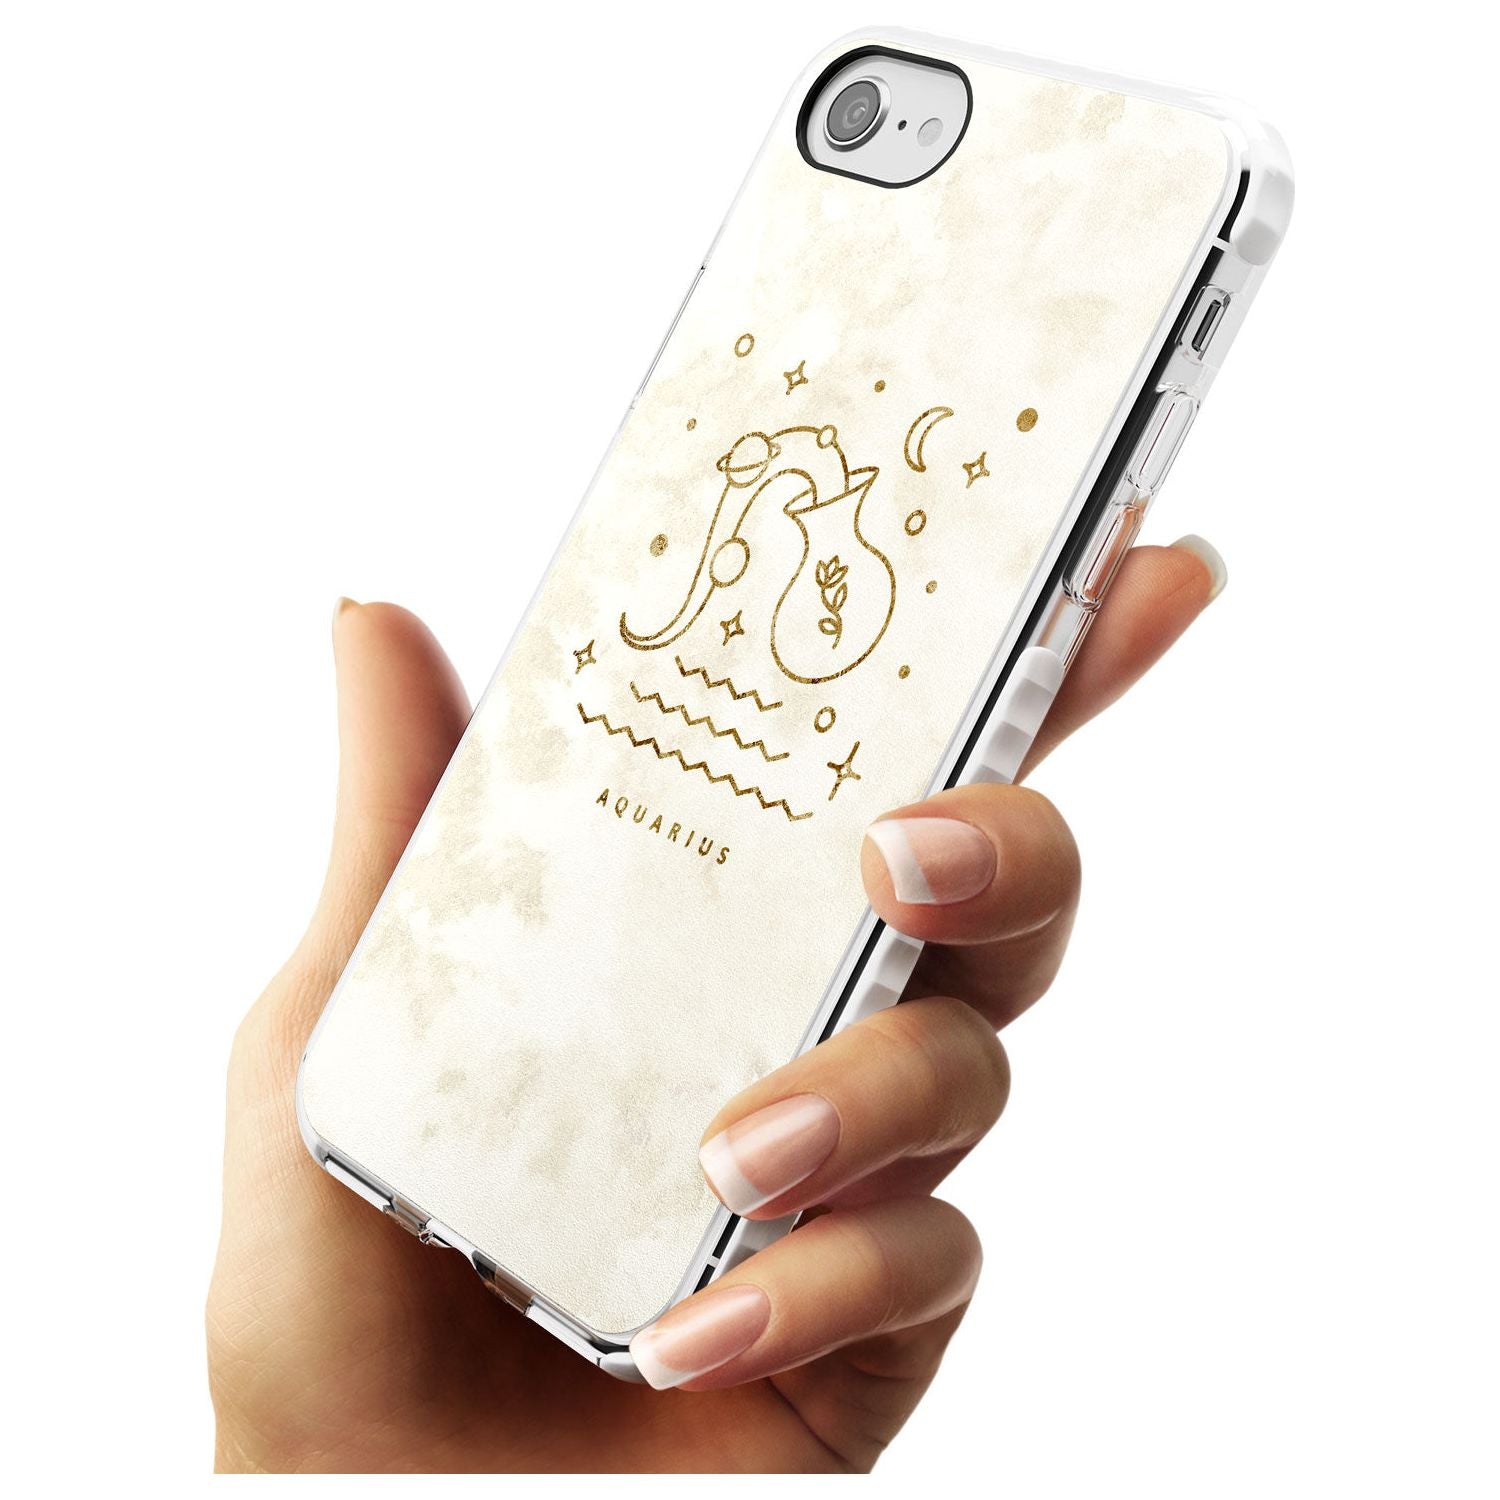 Aquarius Emblem - Solid Gold Marbled Design Impact Phone Case for iPhone SE 8 7 Plus